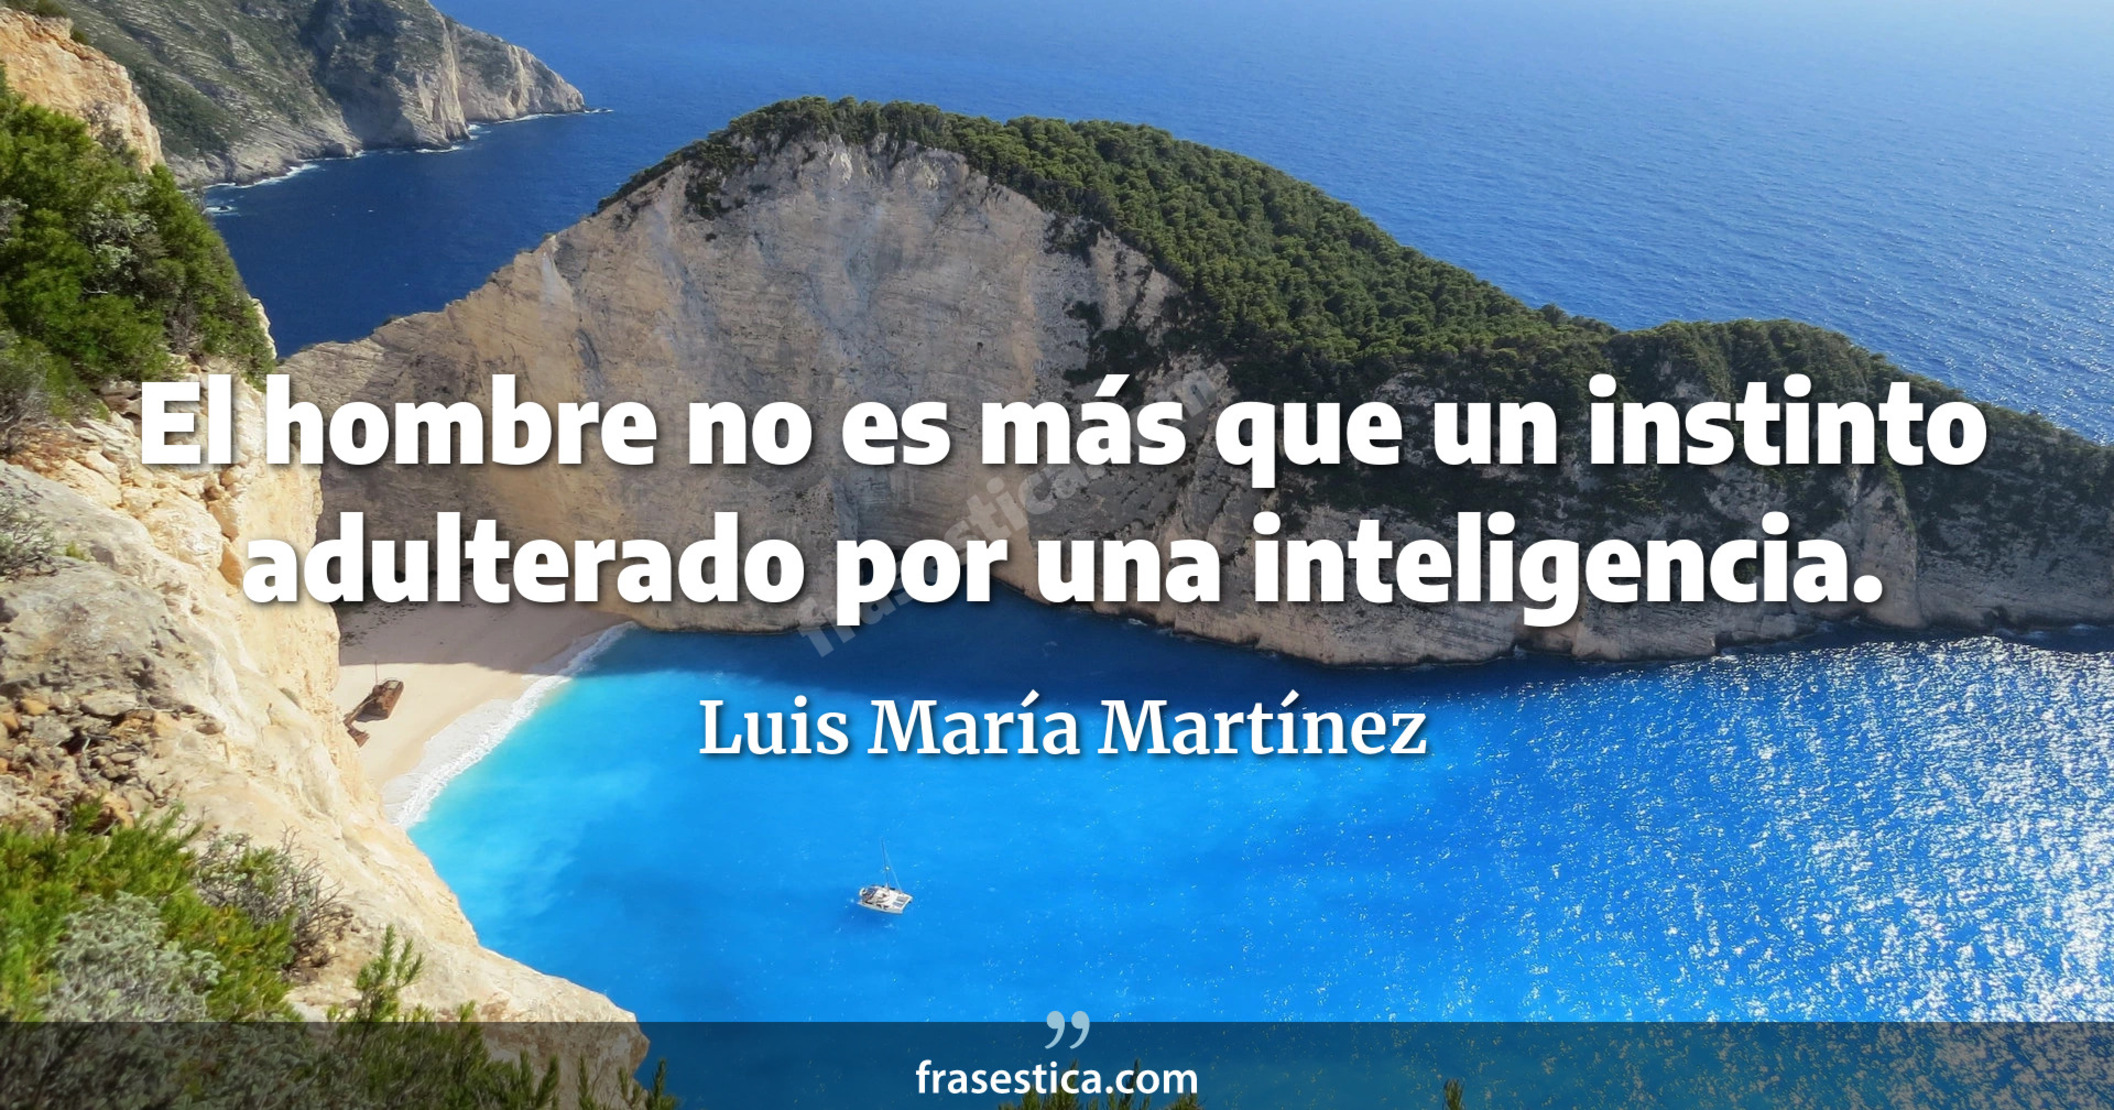 El hombre no es más que un instinto adulterado por una inteligencia. - Luis María Martínez